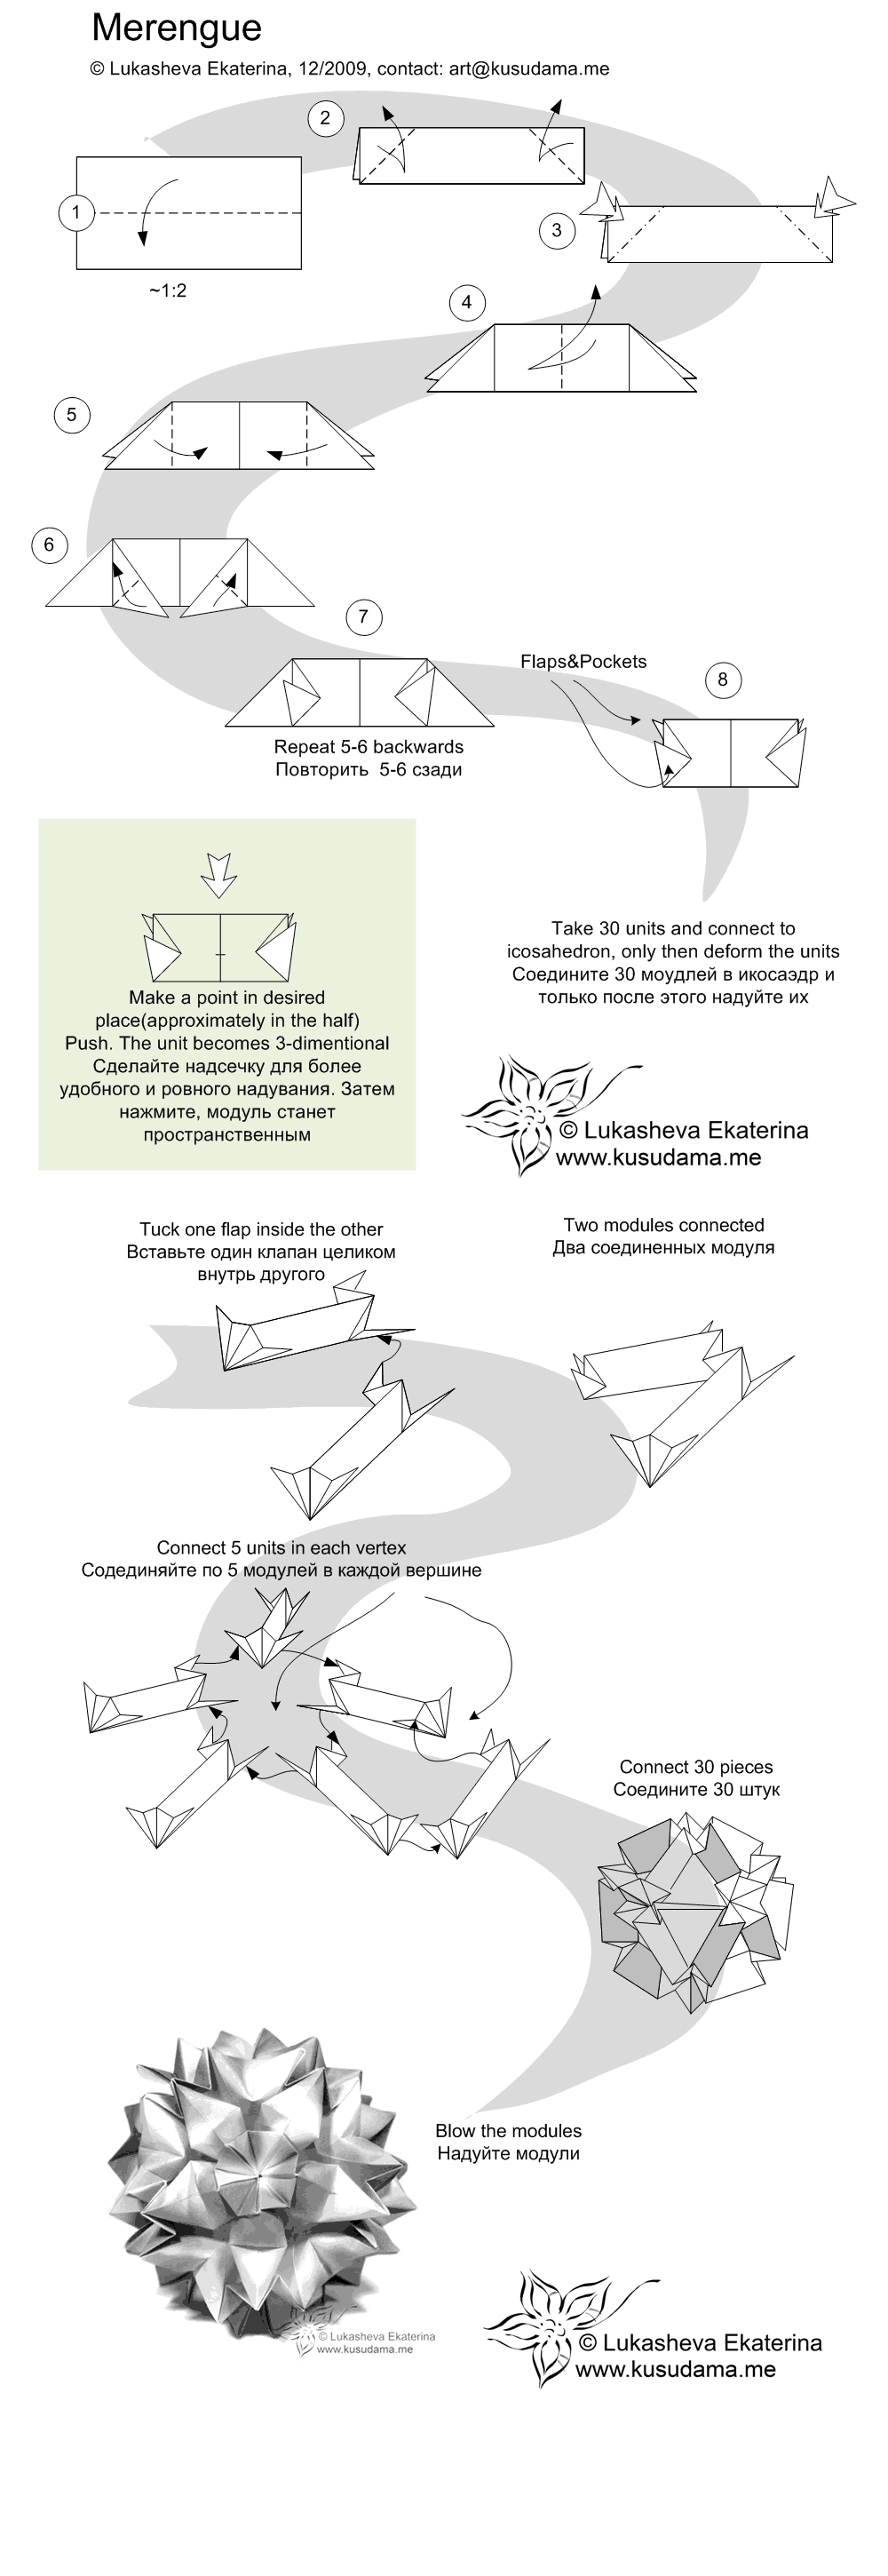 Diagram for Merengue kusudama